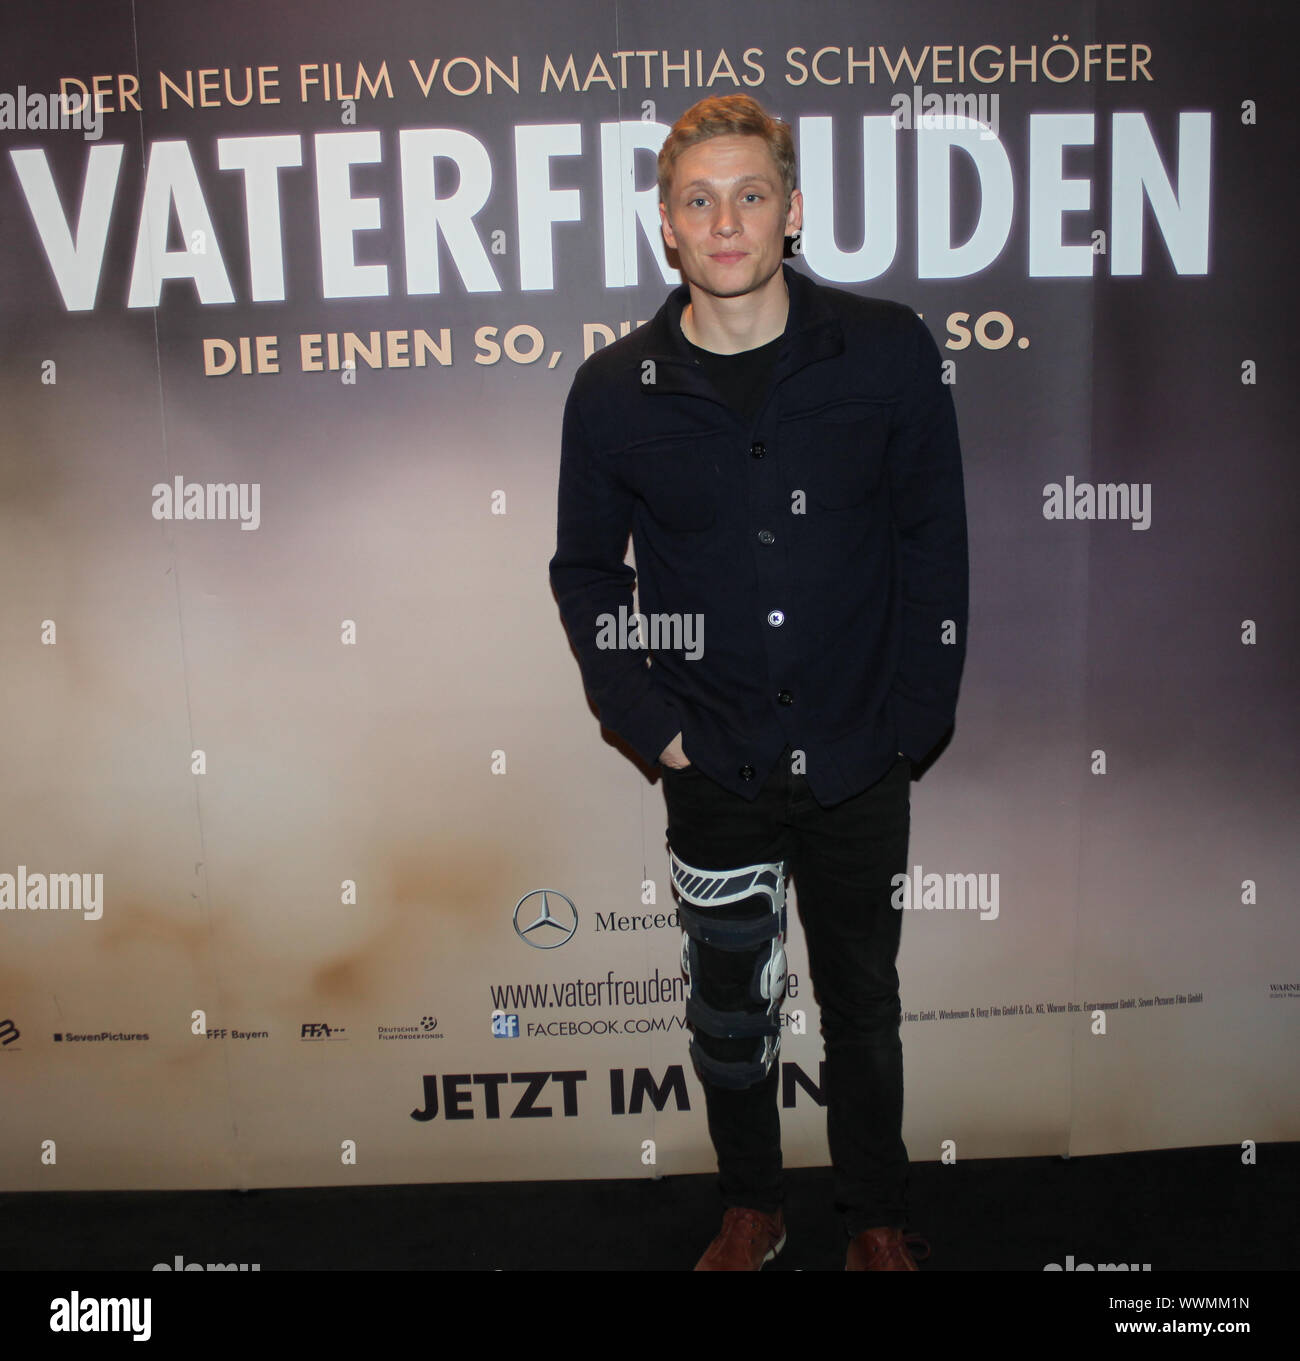 Schauspieler Matthias Schweighöfer bei der Premiere von Vaterfeuden am 6.2.2014 en Magdeburg Foto de stock